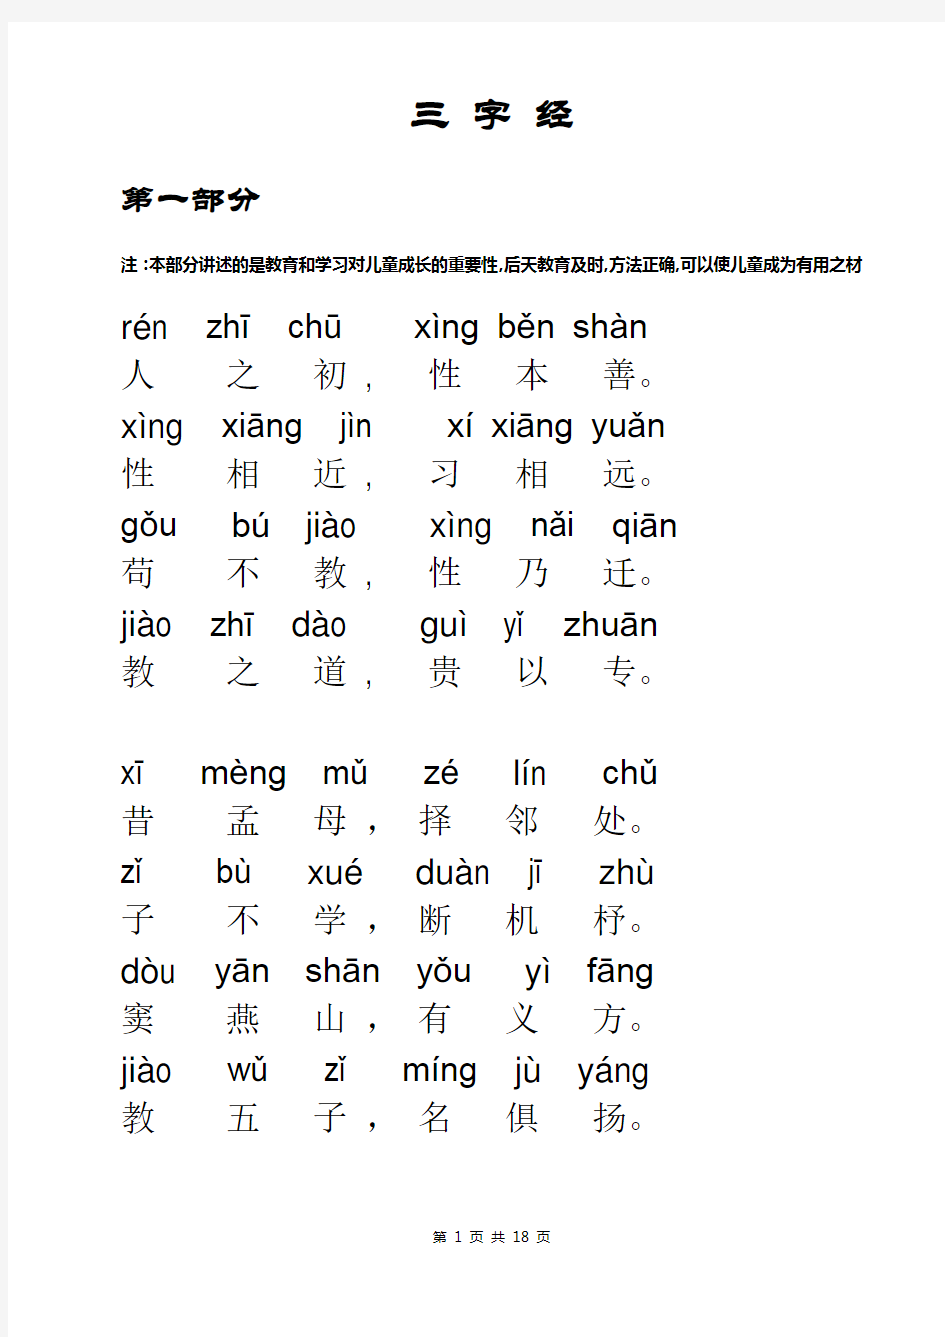 三字经全文带拼音2020打印版